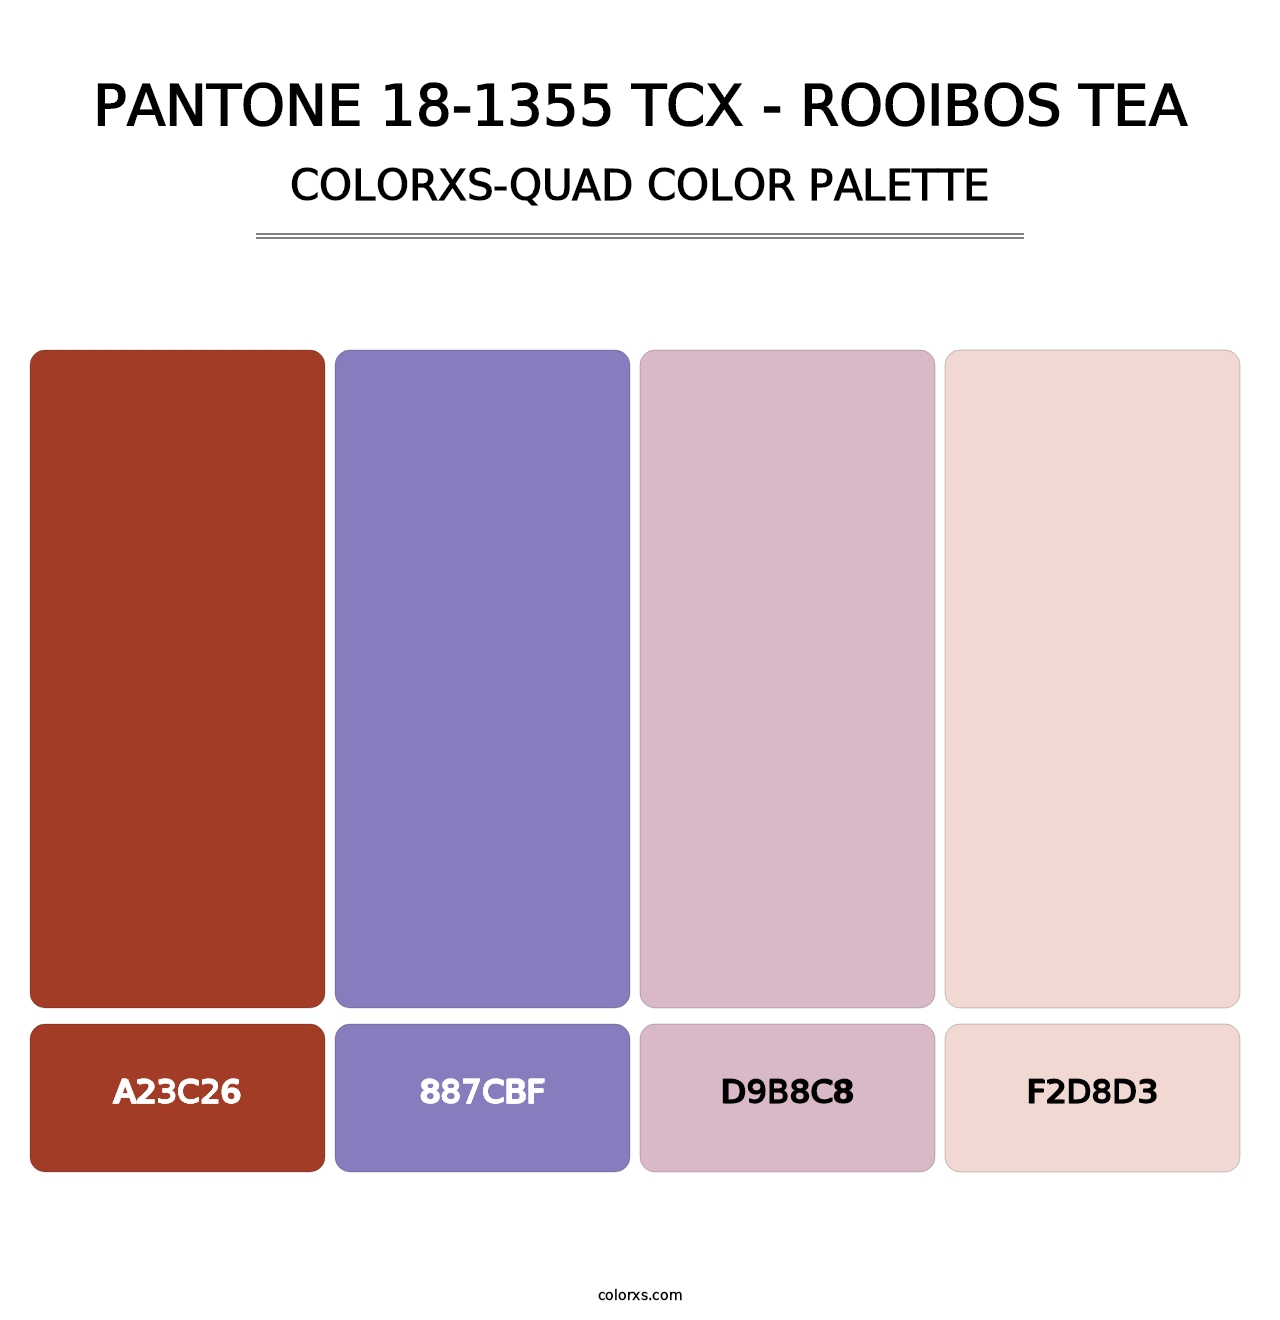 PANTONE 18-1355 TCX - Rooibos Tea - Colorxs Quad Palette